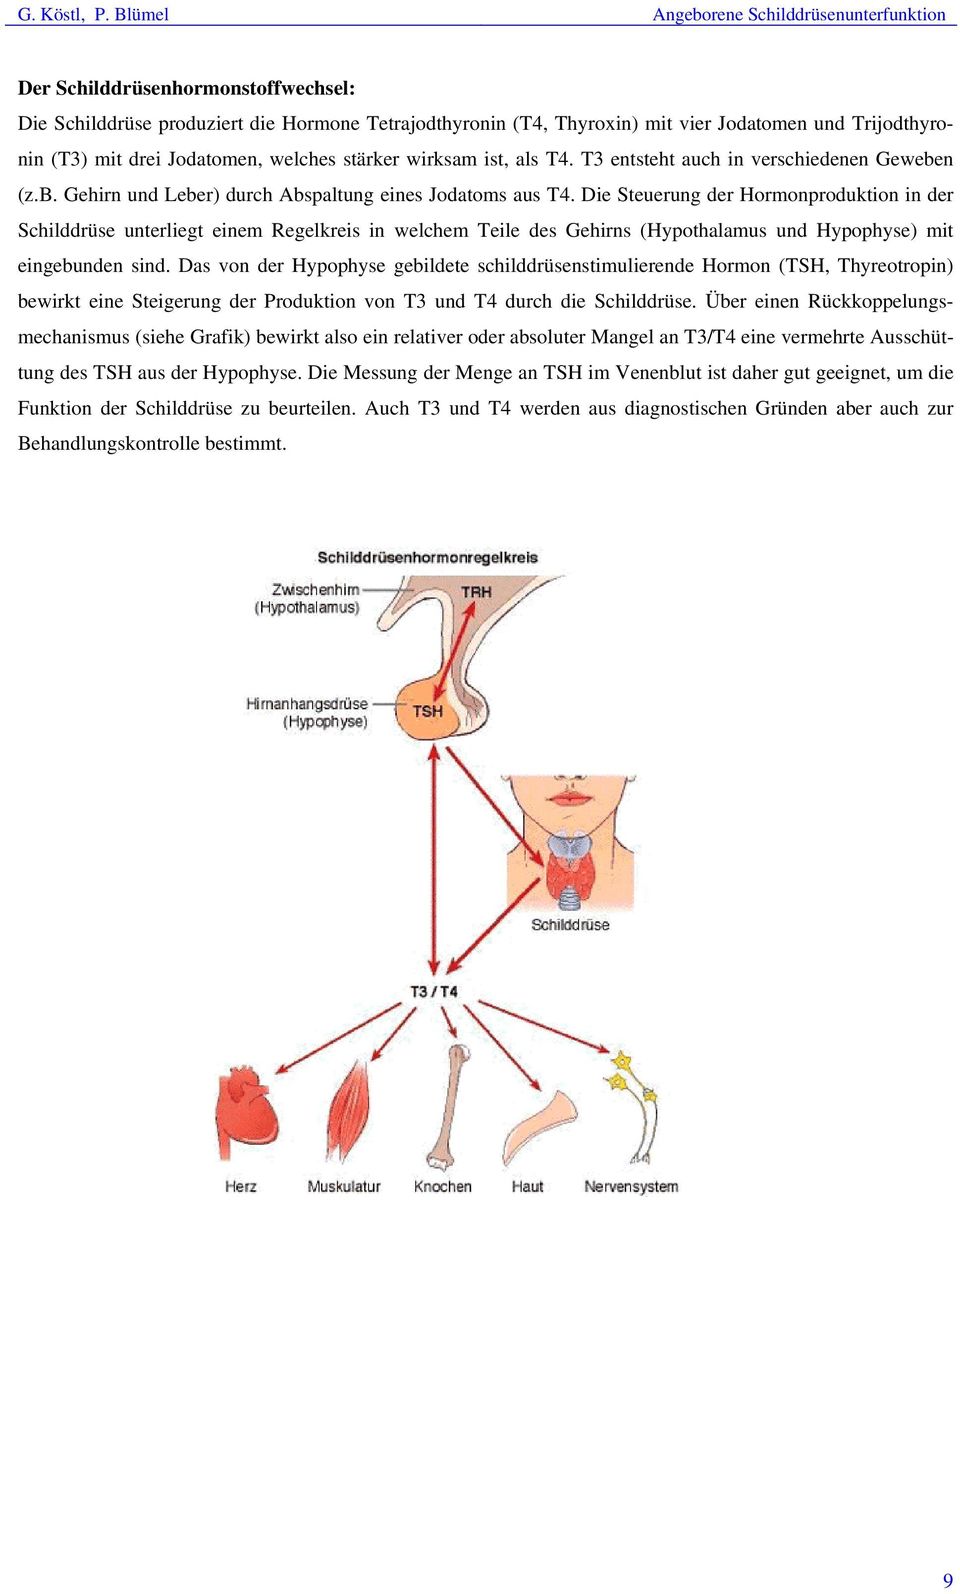 Die Steuerung der Hormonproduktion in der Schilddrüse unterliegt einem Regelkreis in welchem Teile des Gehirns (Hypothalamus und Hypophyse) mit eingebunden sind.